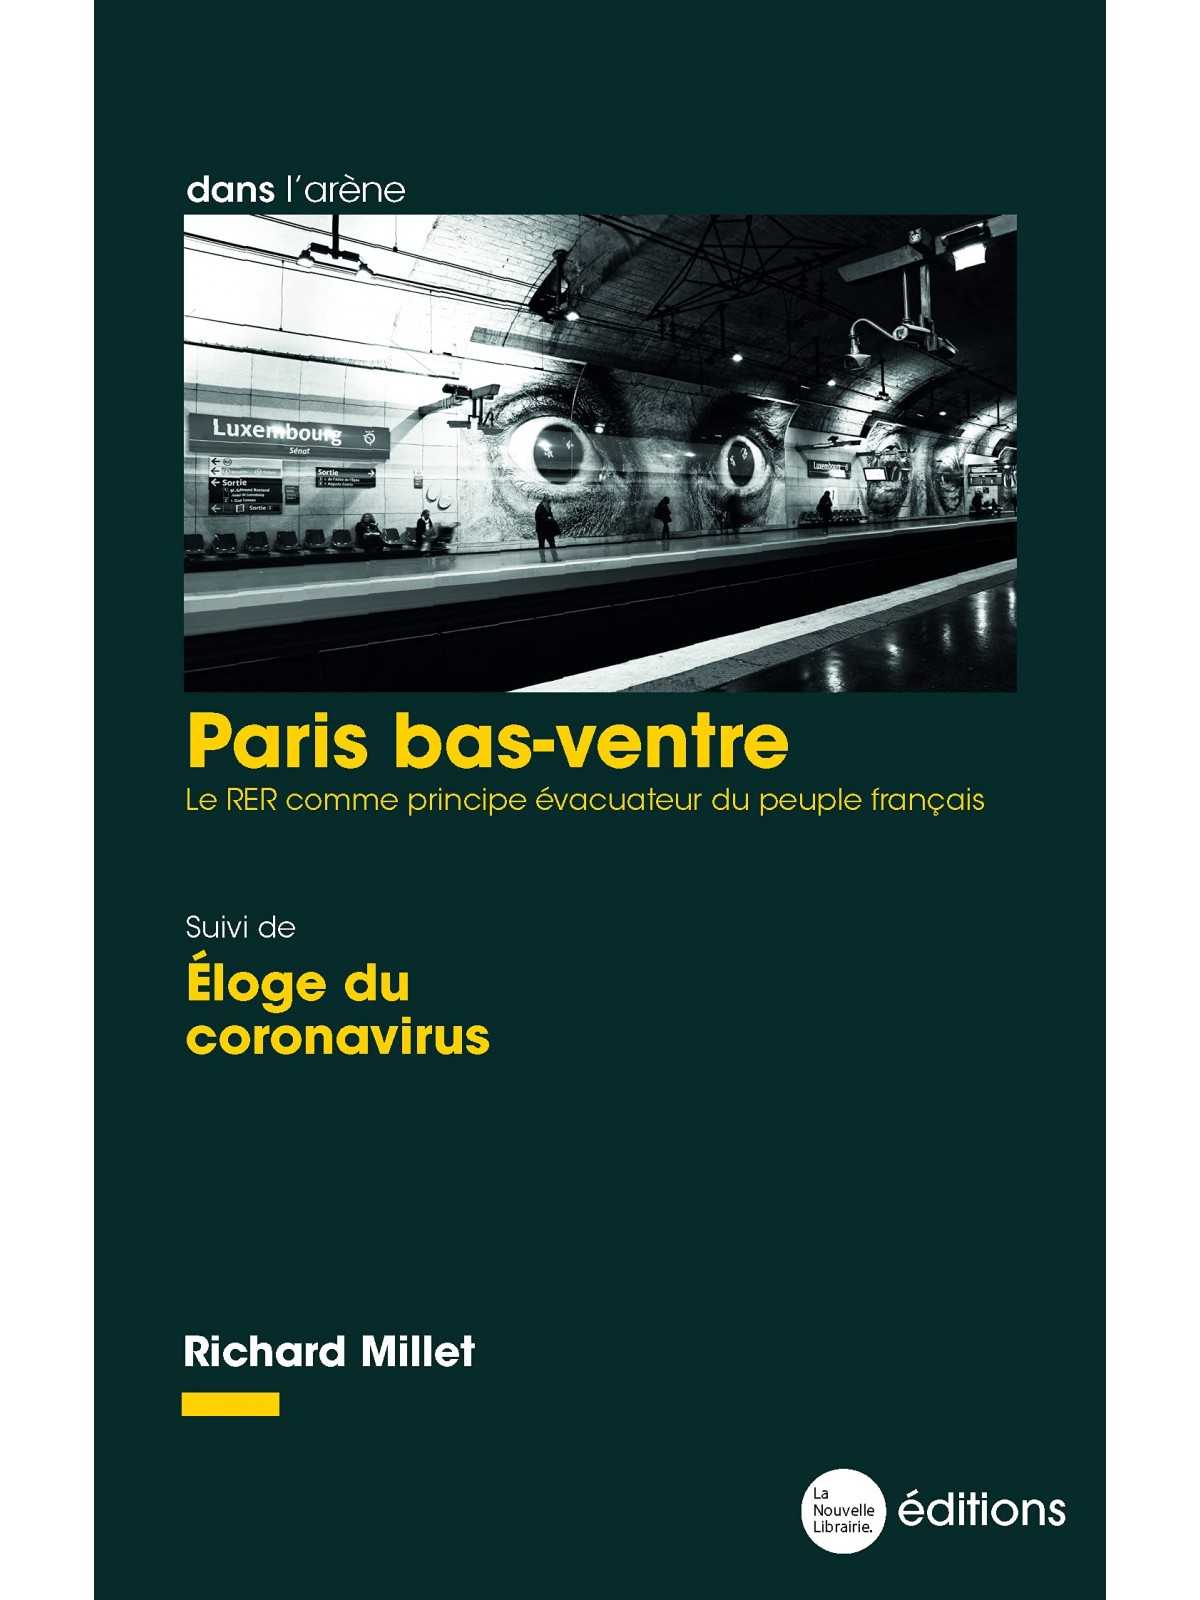 Richard Millet : Paris bas-ventre